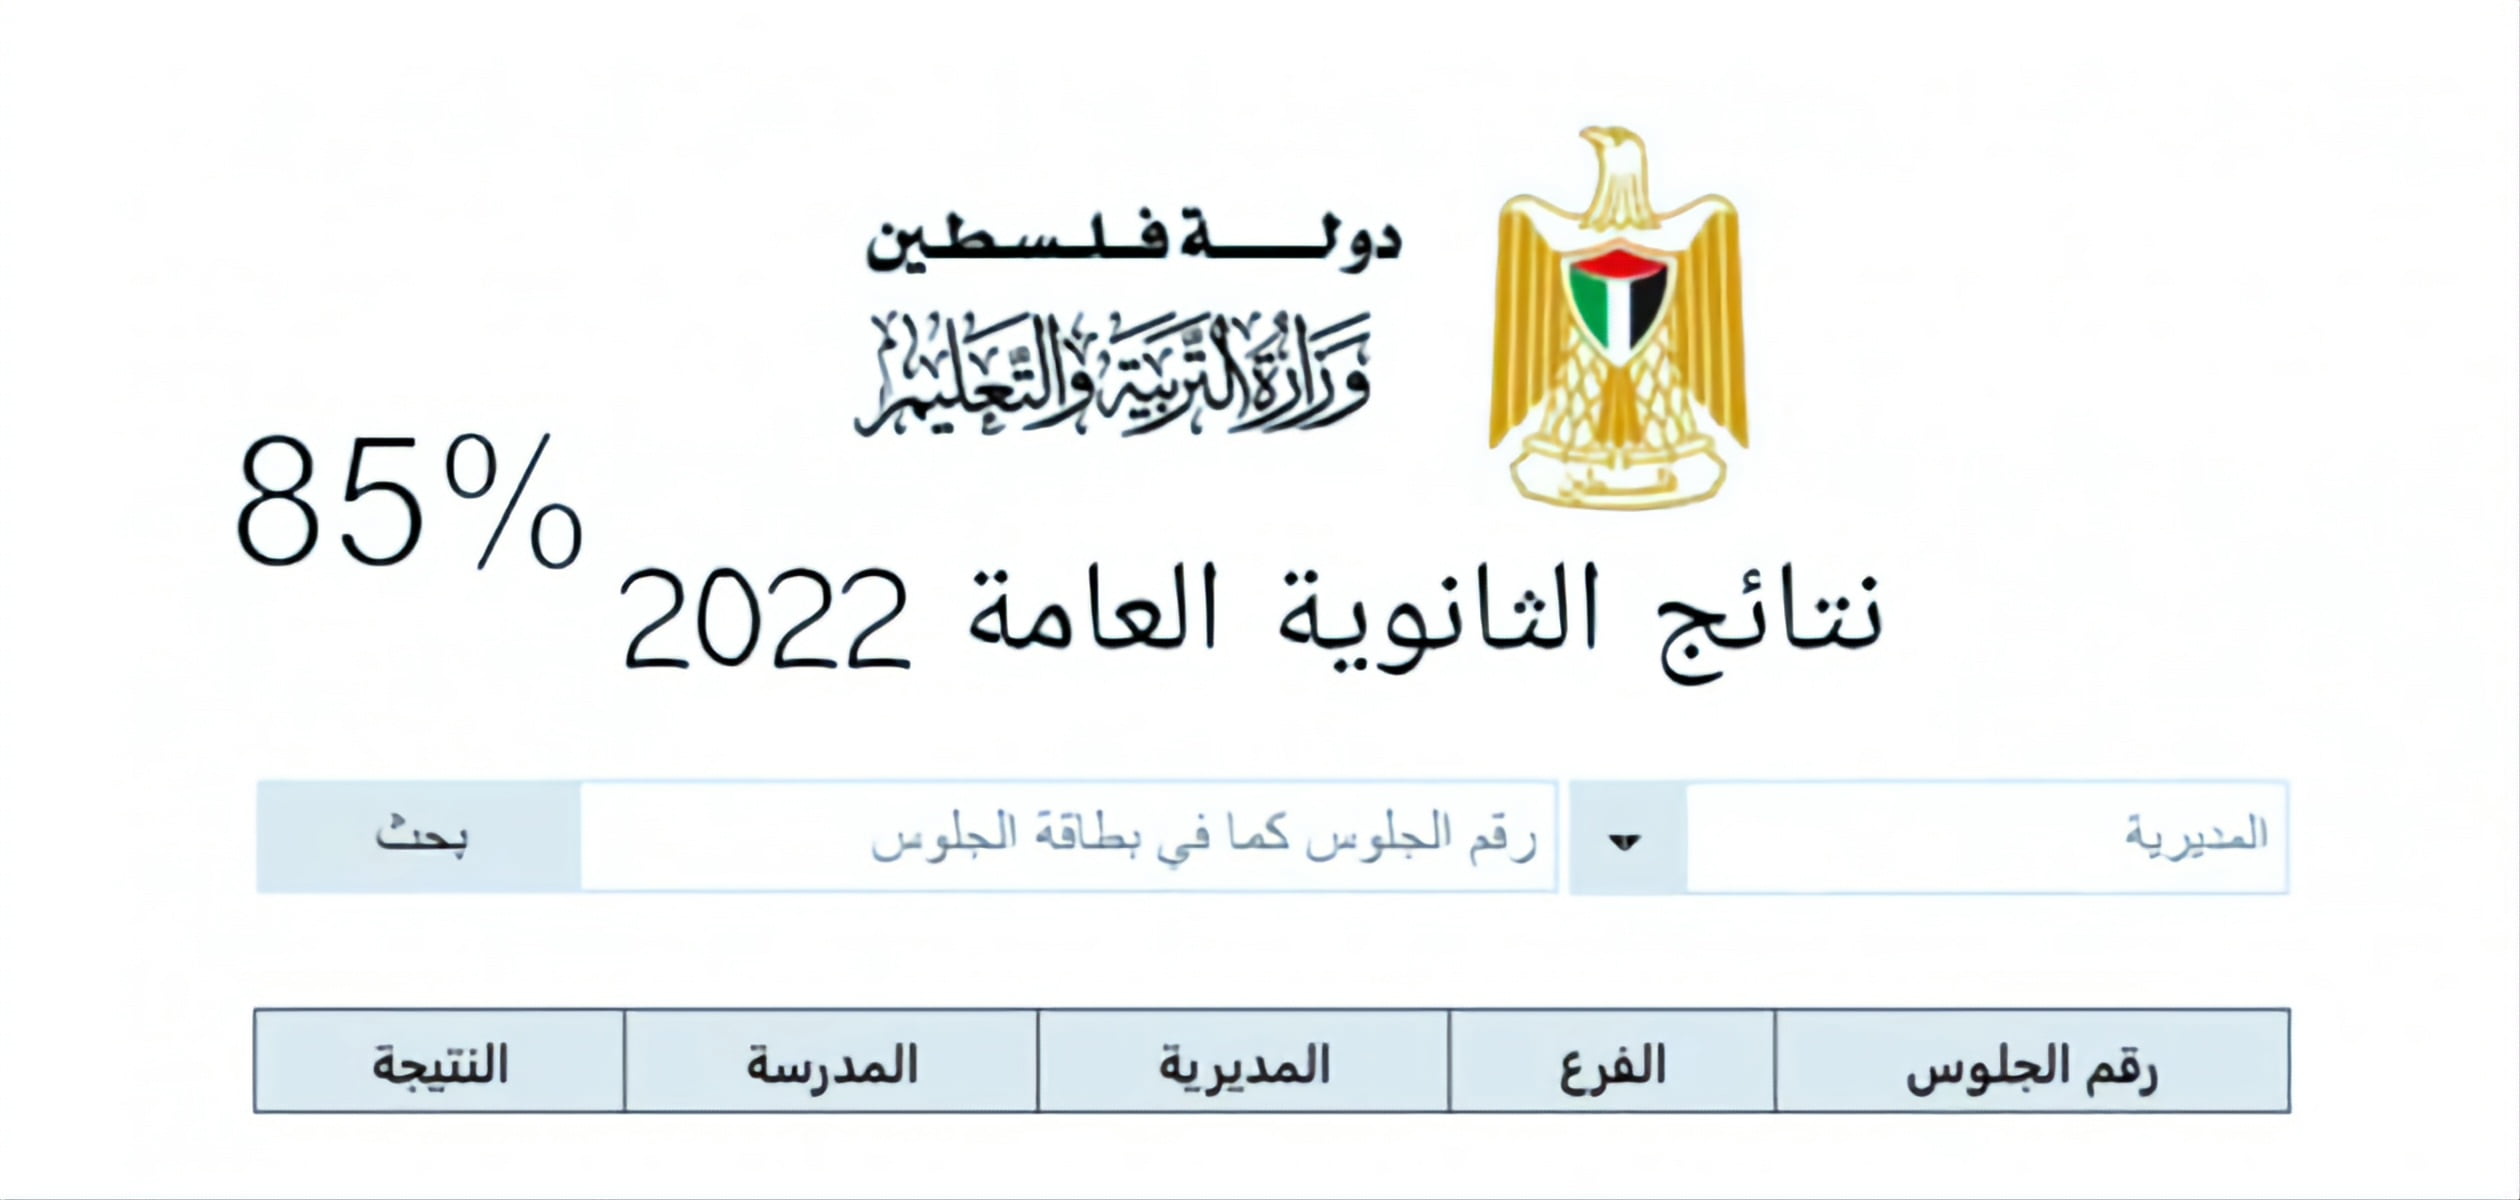 موعد نتائج الثانوية العامة في فلسطين 2022